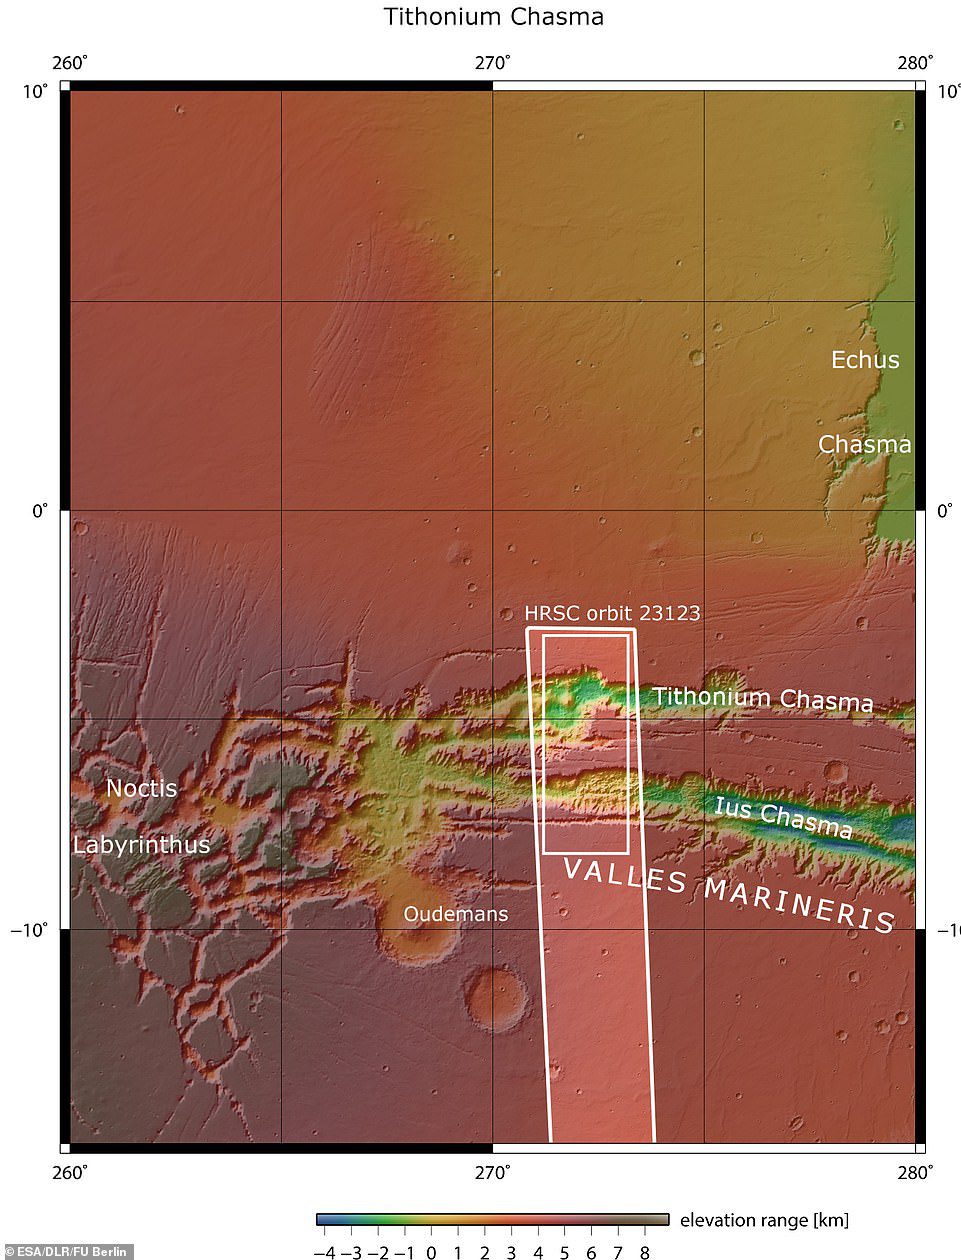 LusとTithoniumChasmataが上に表示されています。 濃い白のボックスで囲まれた領域は、軌道上で2022年4月21日にマーズエクスプレス高解像度ステレオカメラによって画像化された領域を示しています。